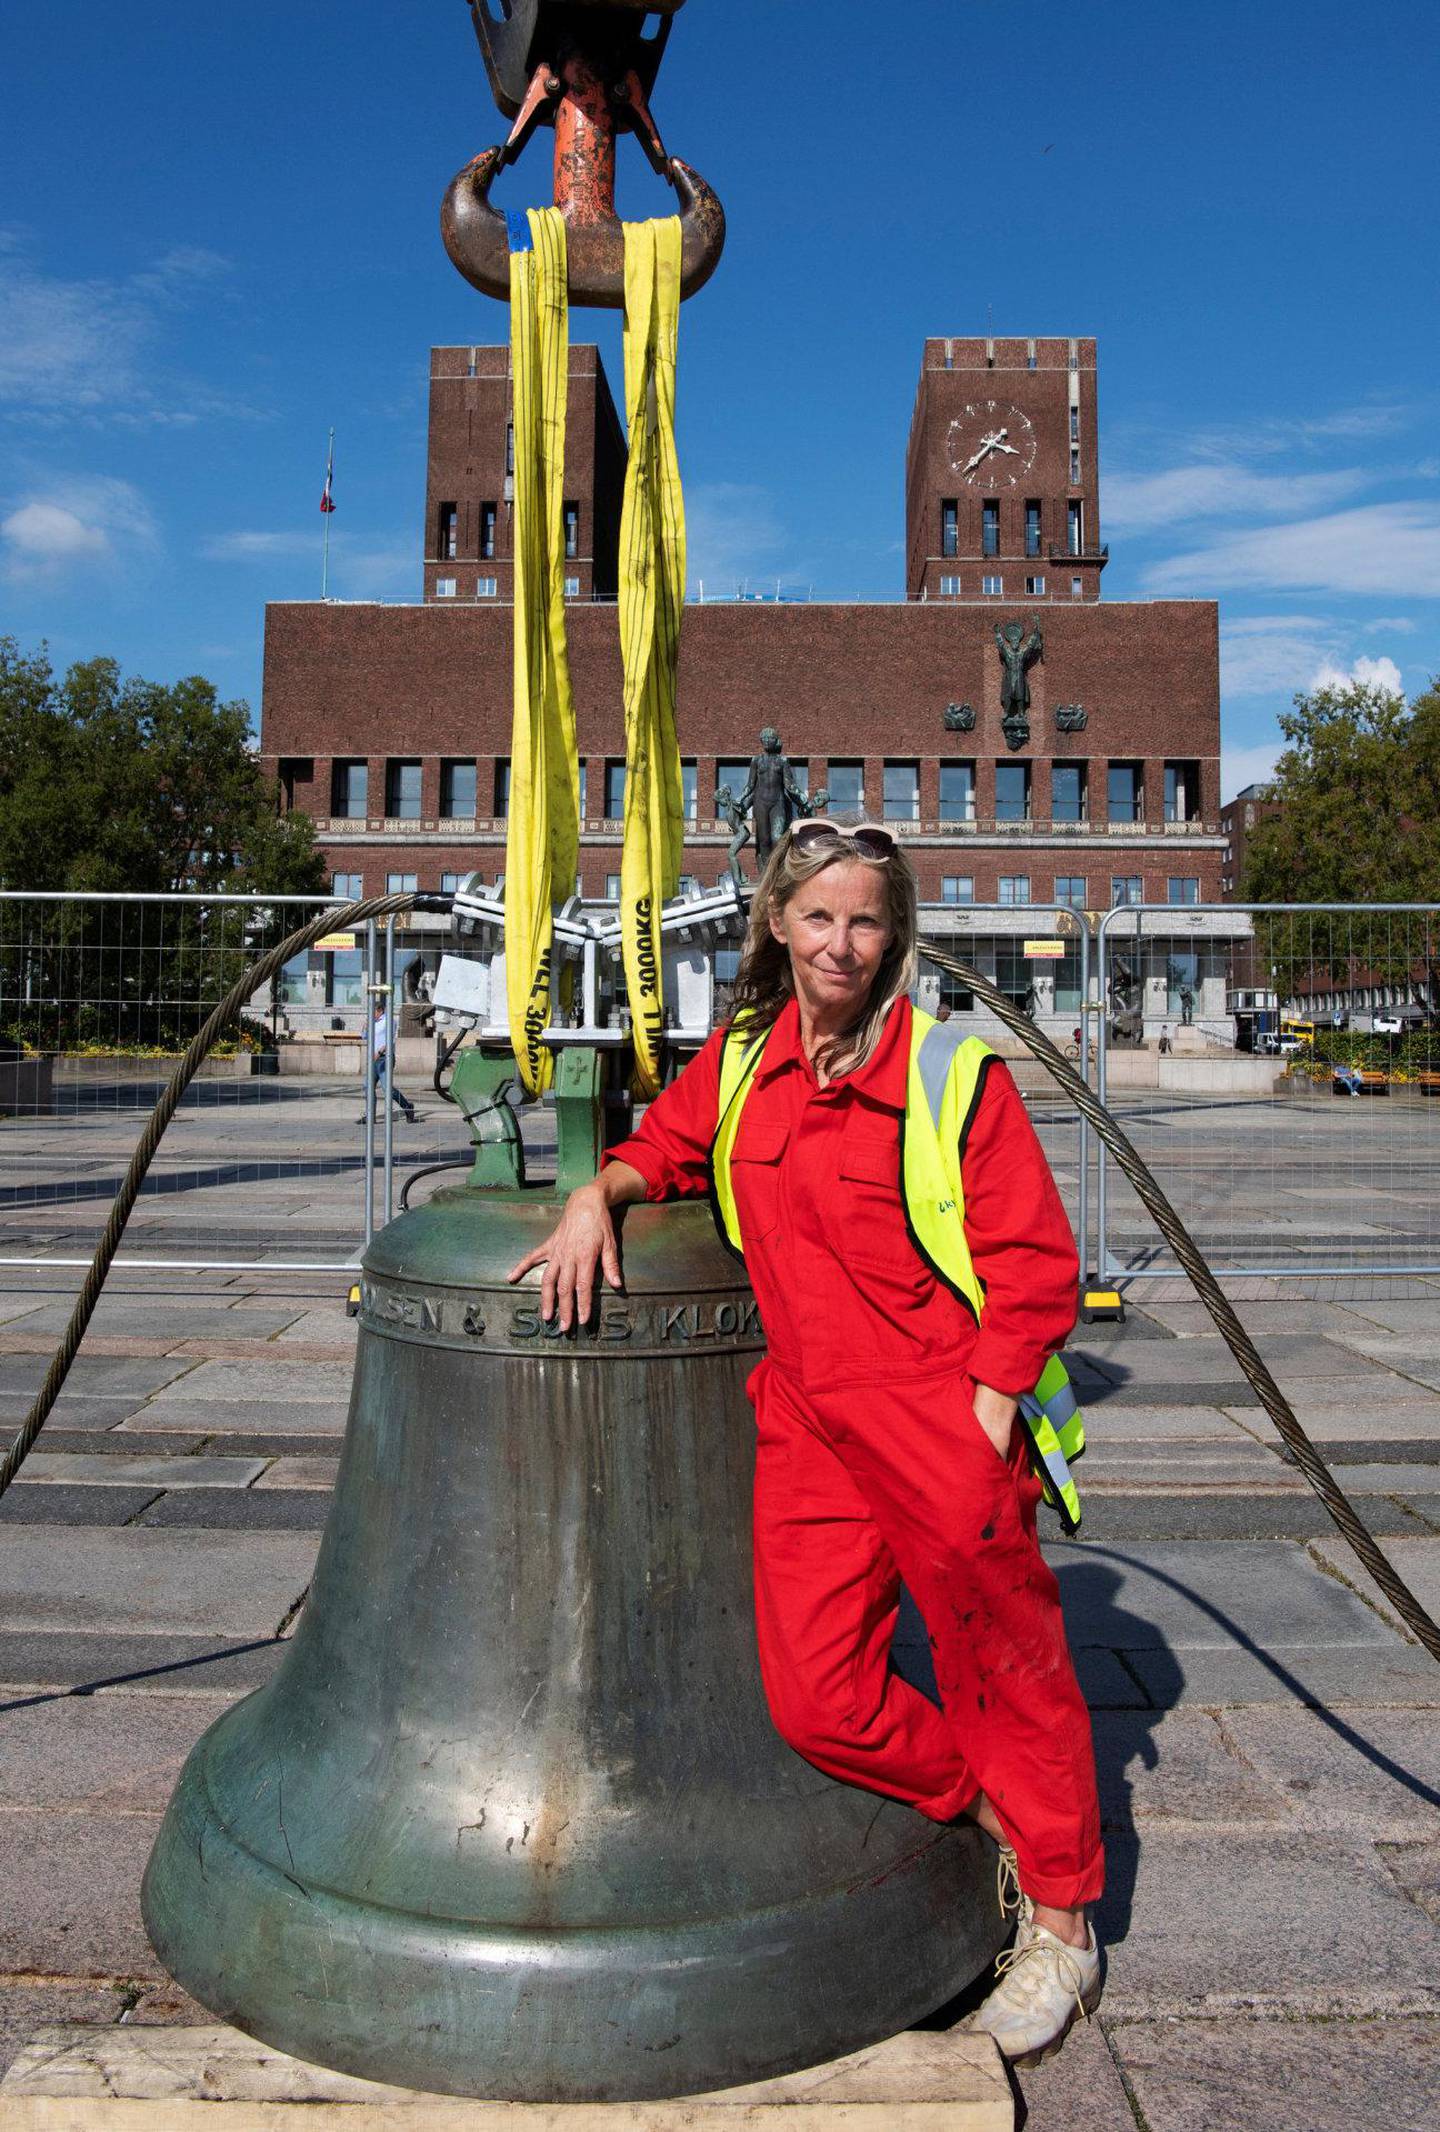 Kunstner A K Dolvens er 1, 5 tonn tunge «Untuned Bell» har fått permanent plass over Honnørbrygga i Oslo. Her er Dolven under monteringen foran åpningen av kunstverket i dag, lørdag.
Foto: Mimsy Møller